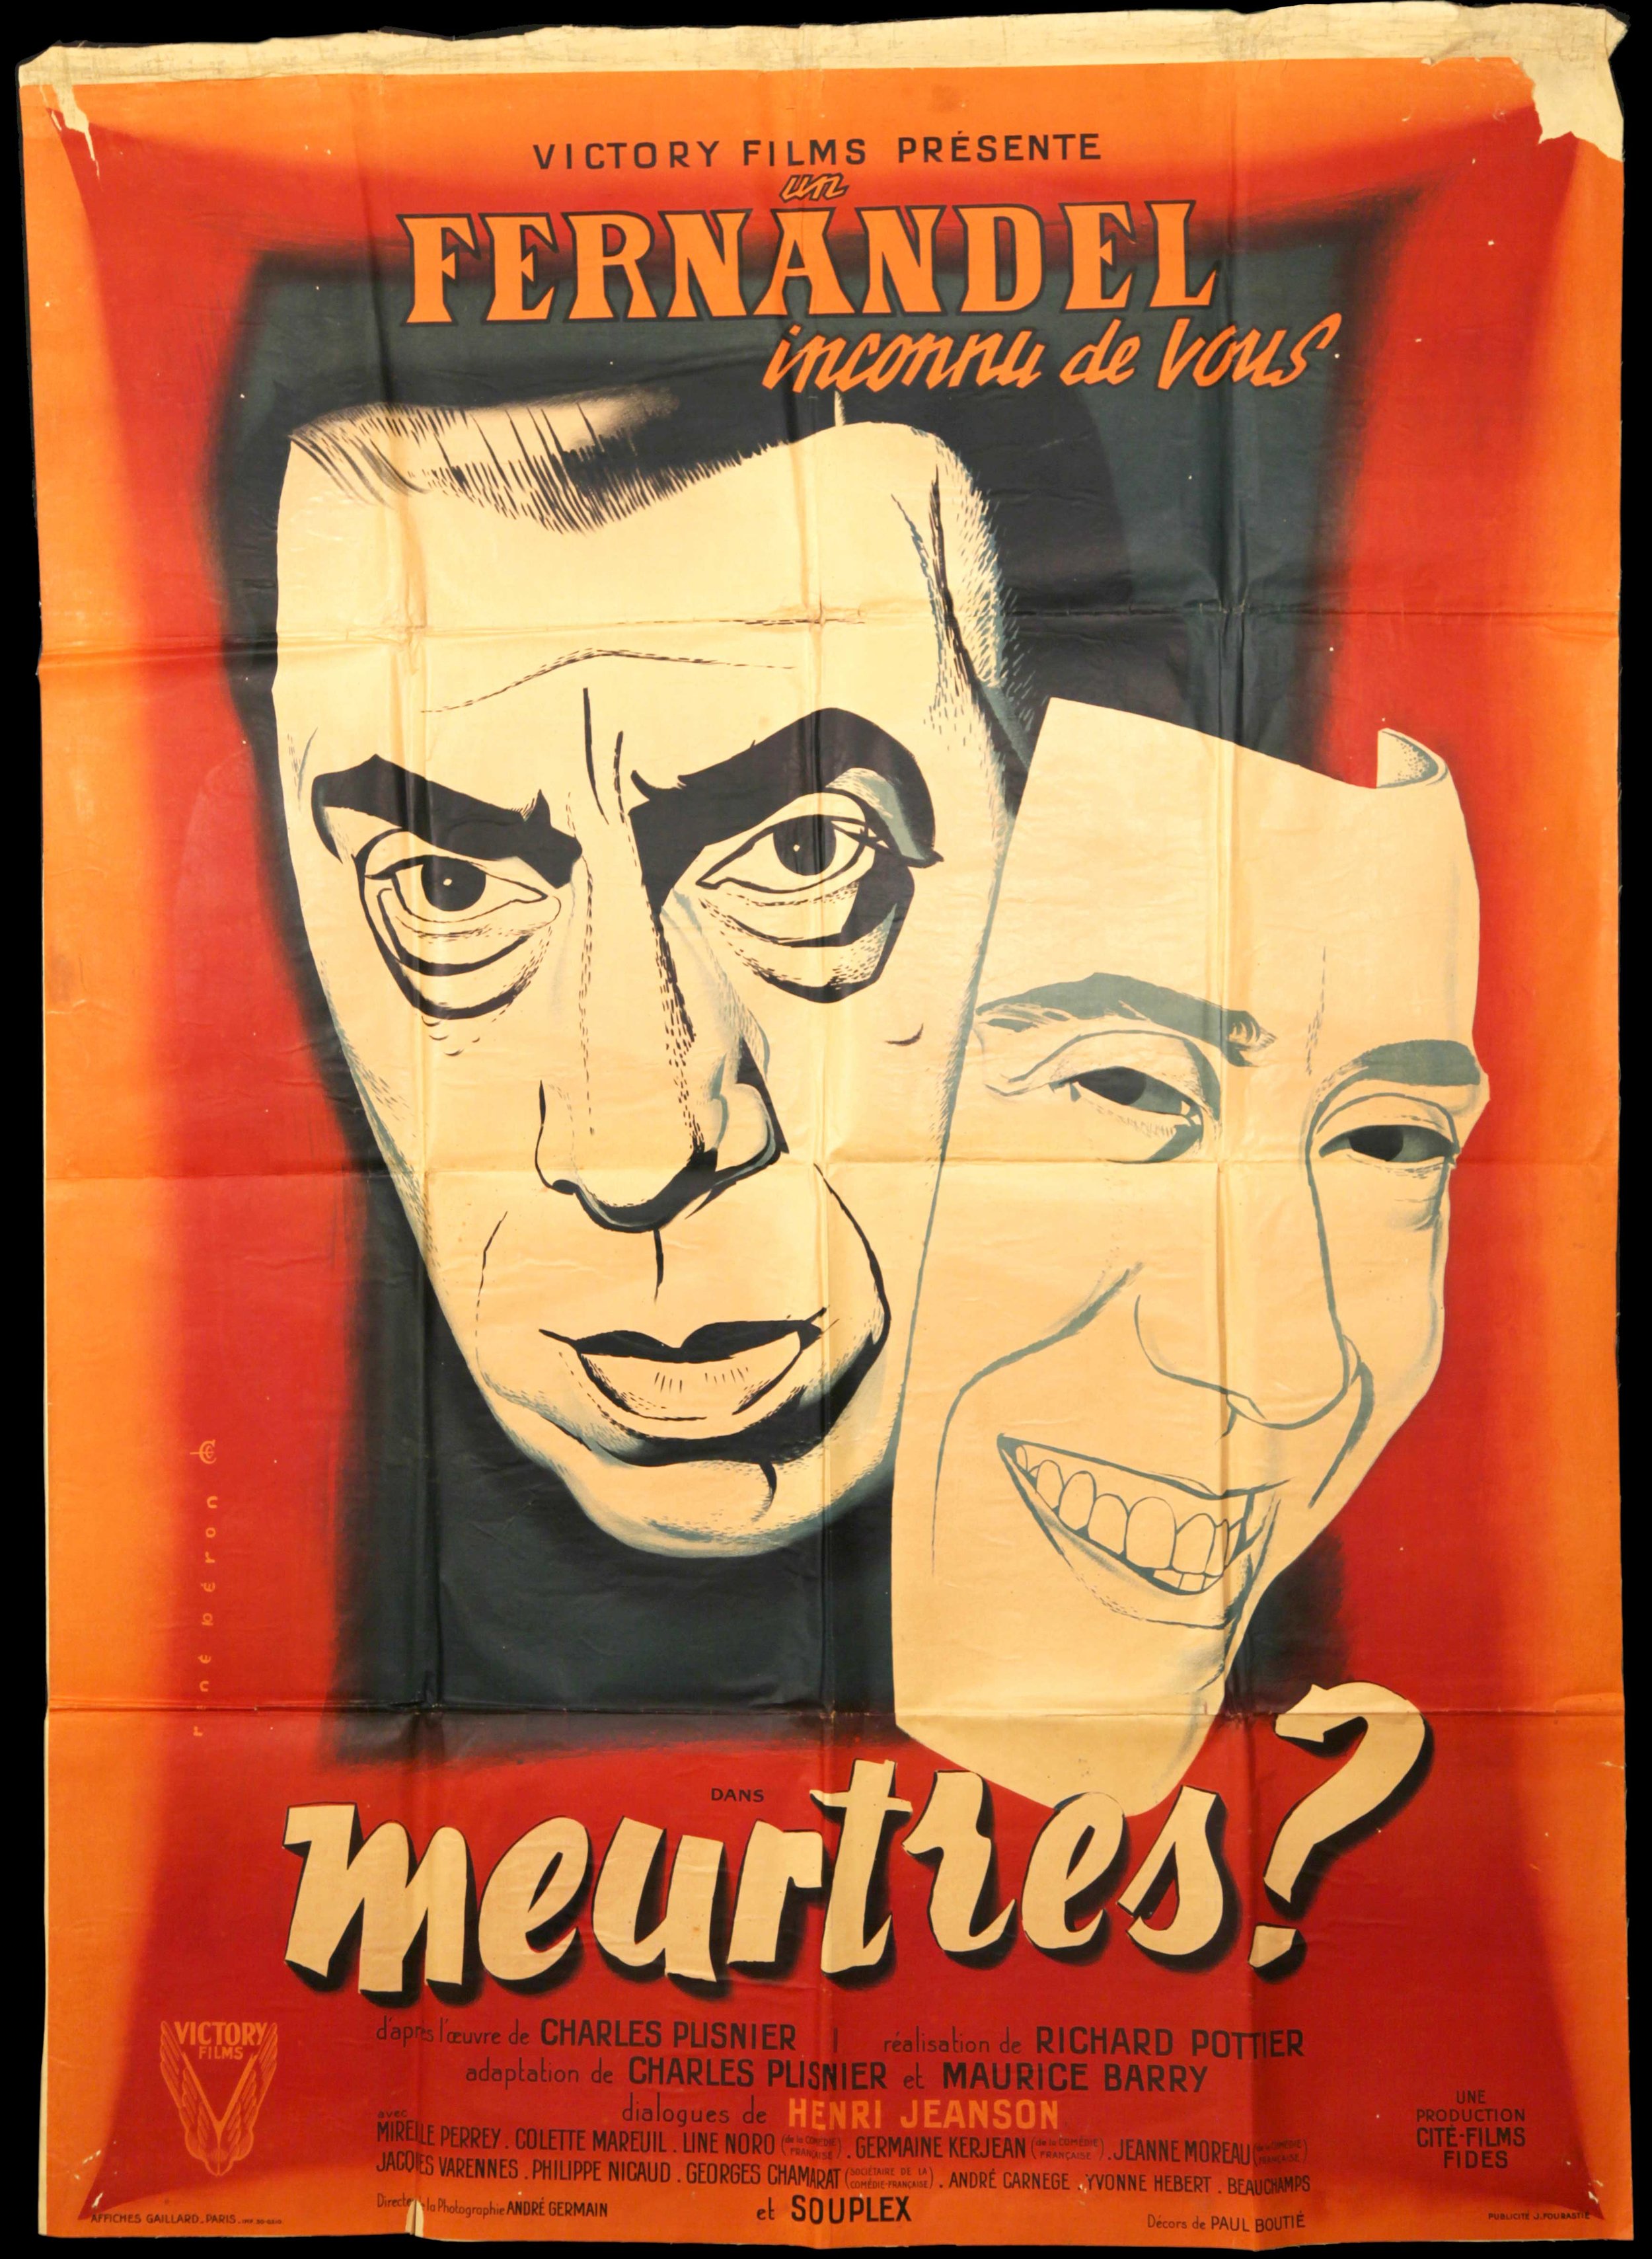 Fernadel in "Meurtres" (1950)